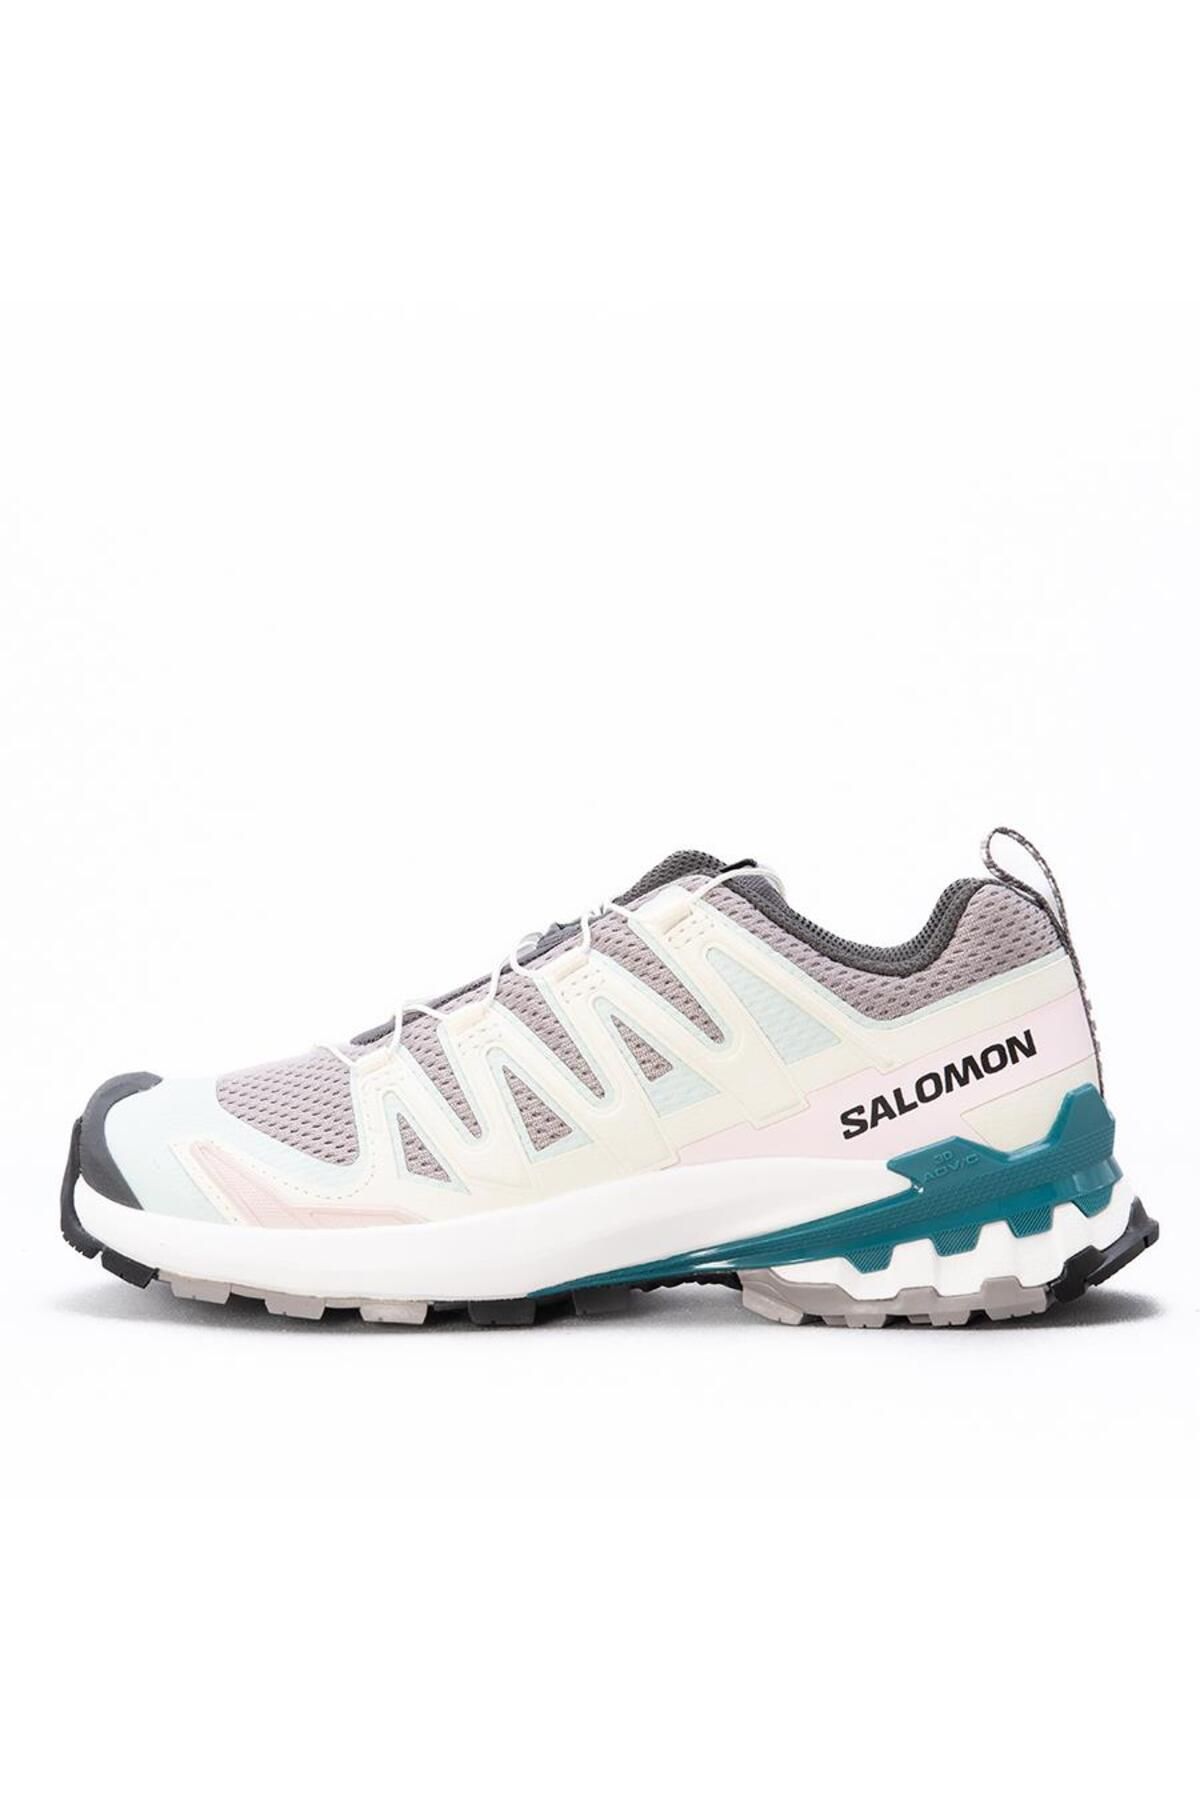 Salomon Xa Pro 3d V9 W Kadın Outdoor Ayakkabı L471189